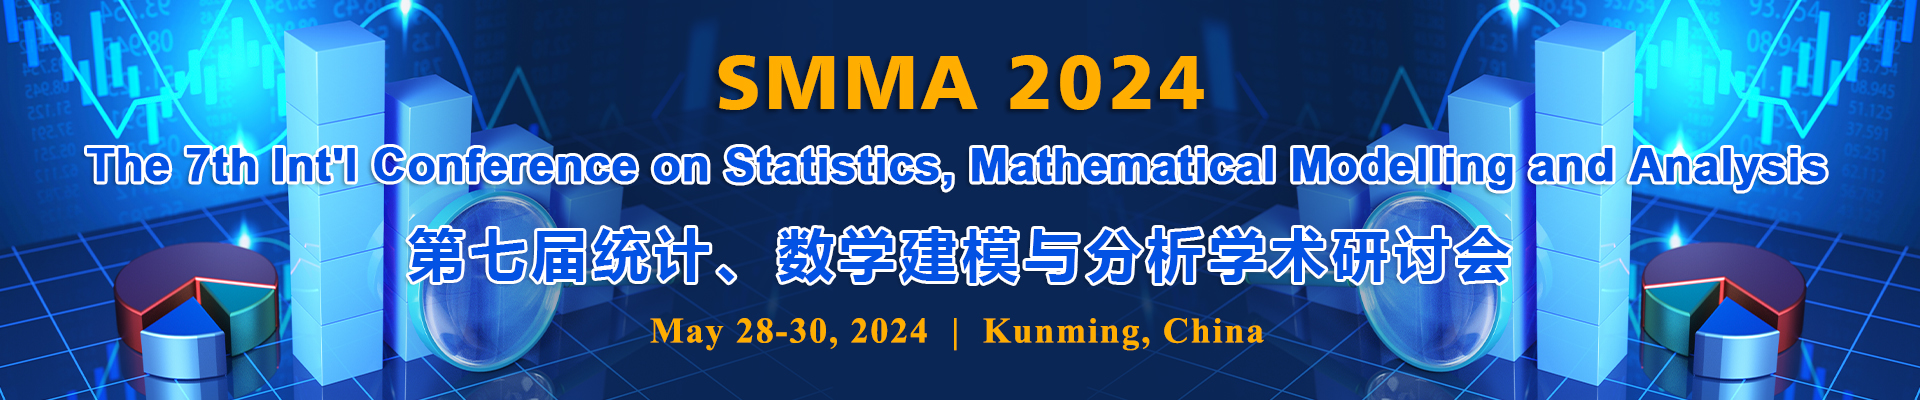 第七届统计、数学建模与分析学术研讨会(SMMA 2024)